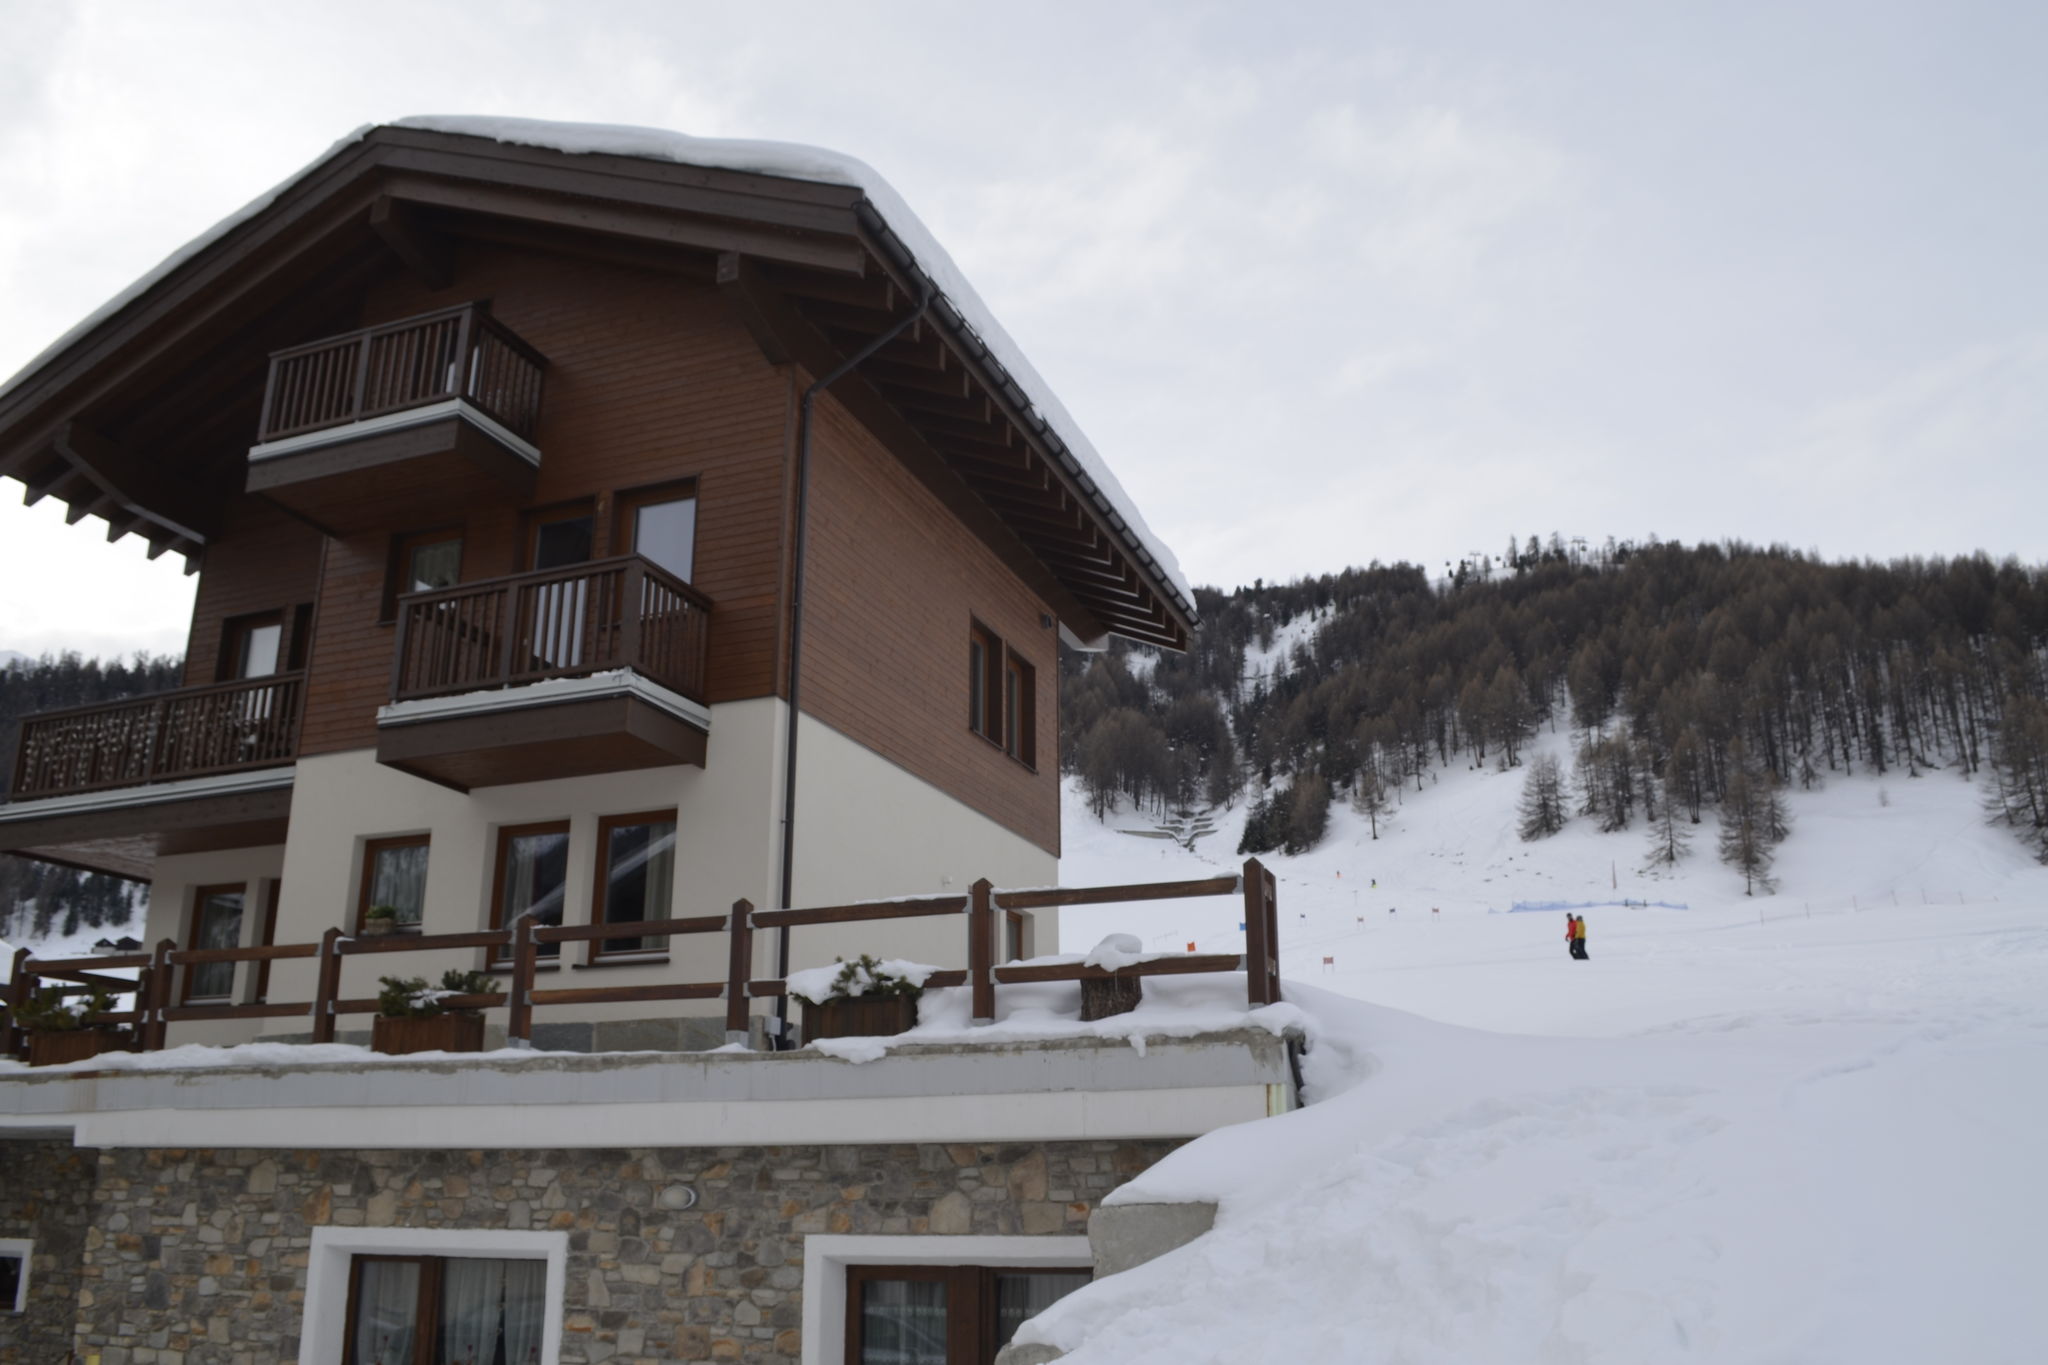 Modernes Ferienhaus in Livigno, Italien nahe dem Skigebiet